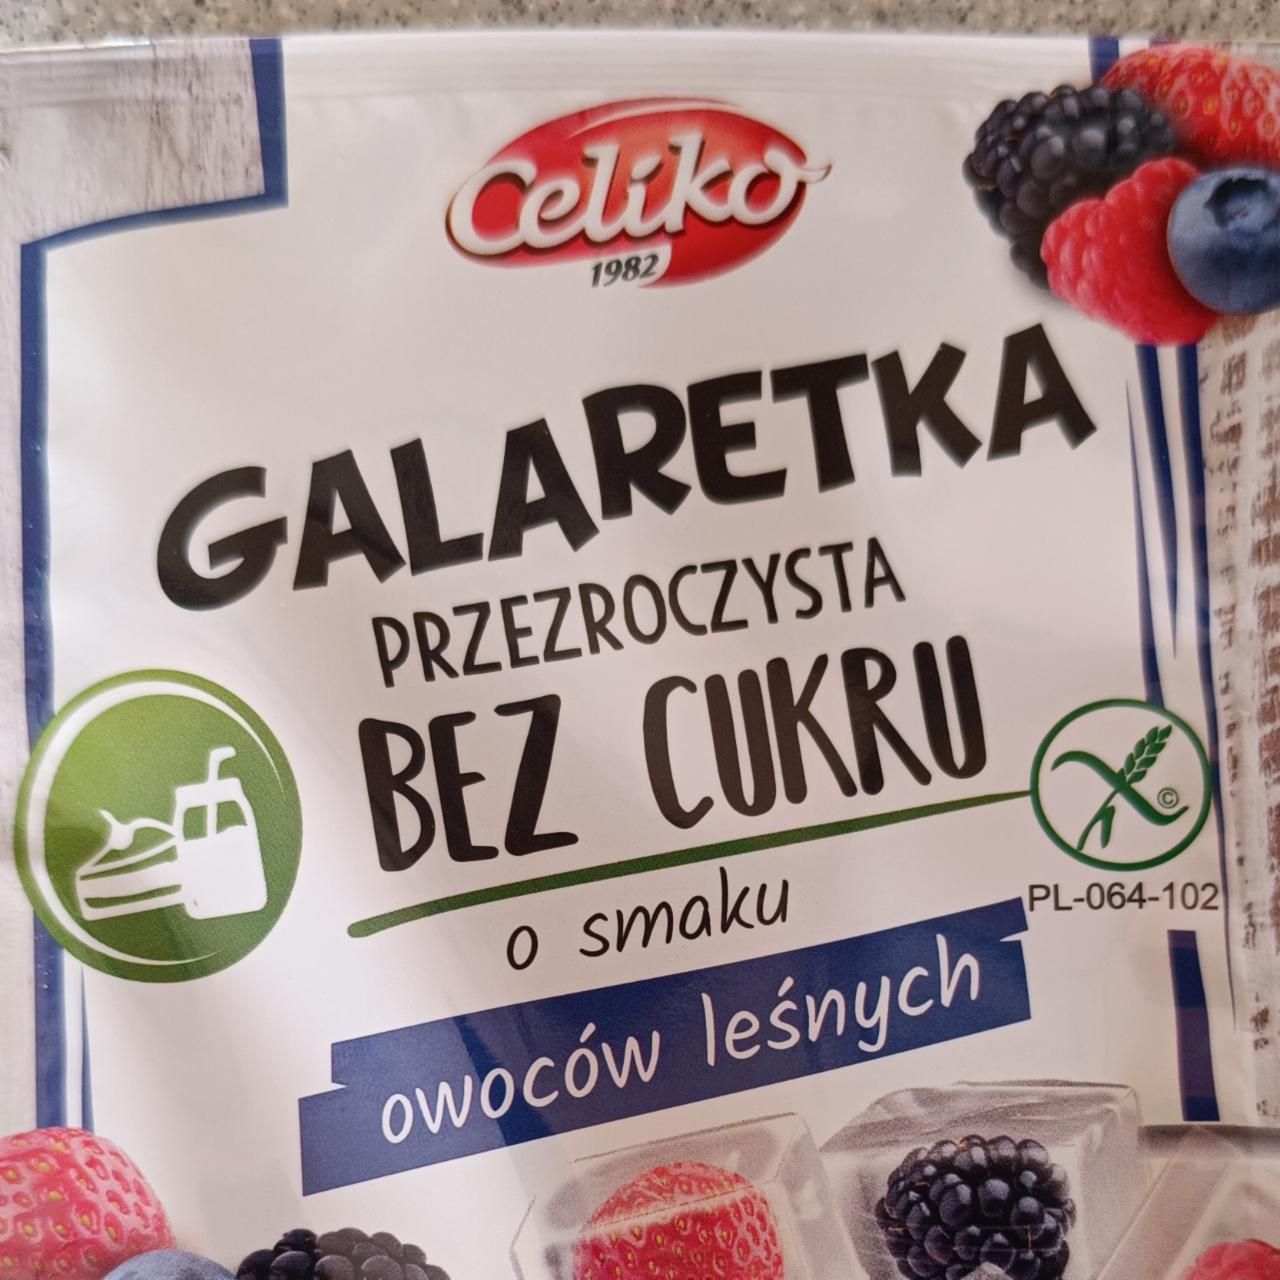 Fotografie - Galaretka bez cukru o smaku owocow lesnych Celiko